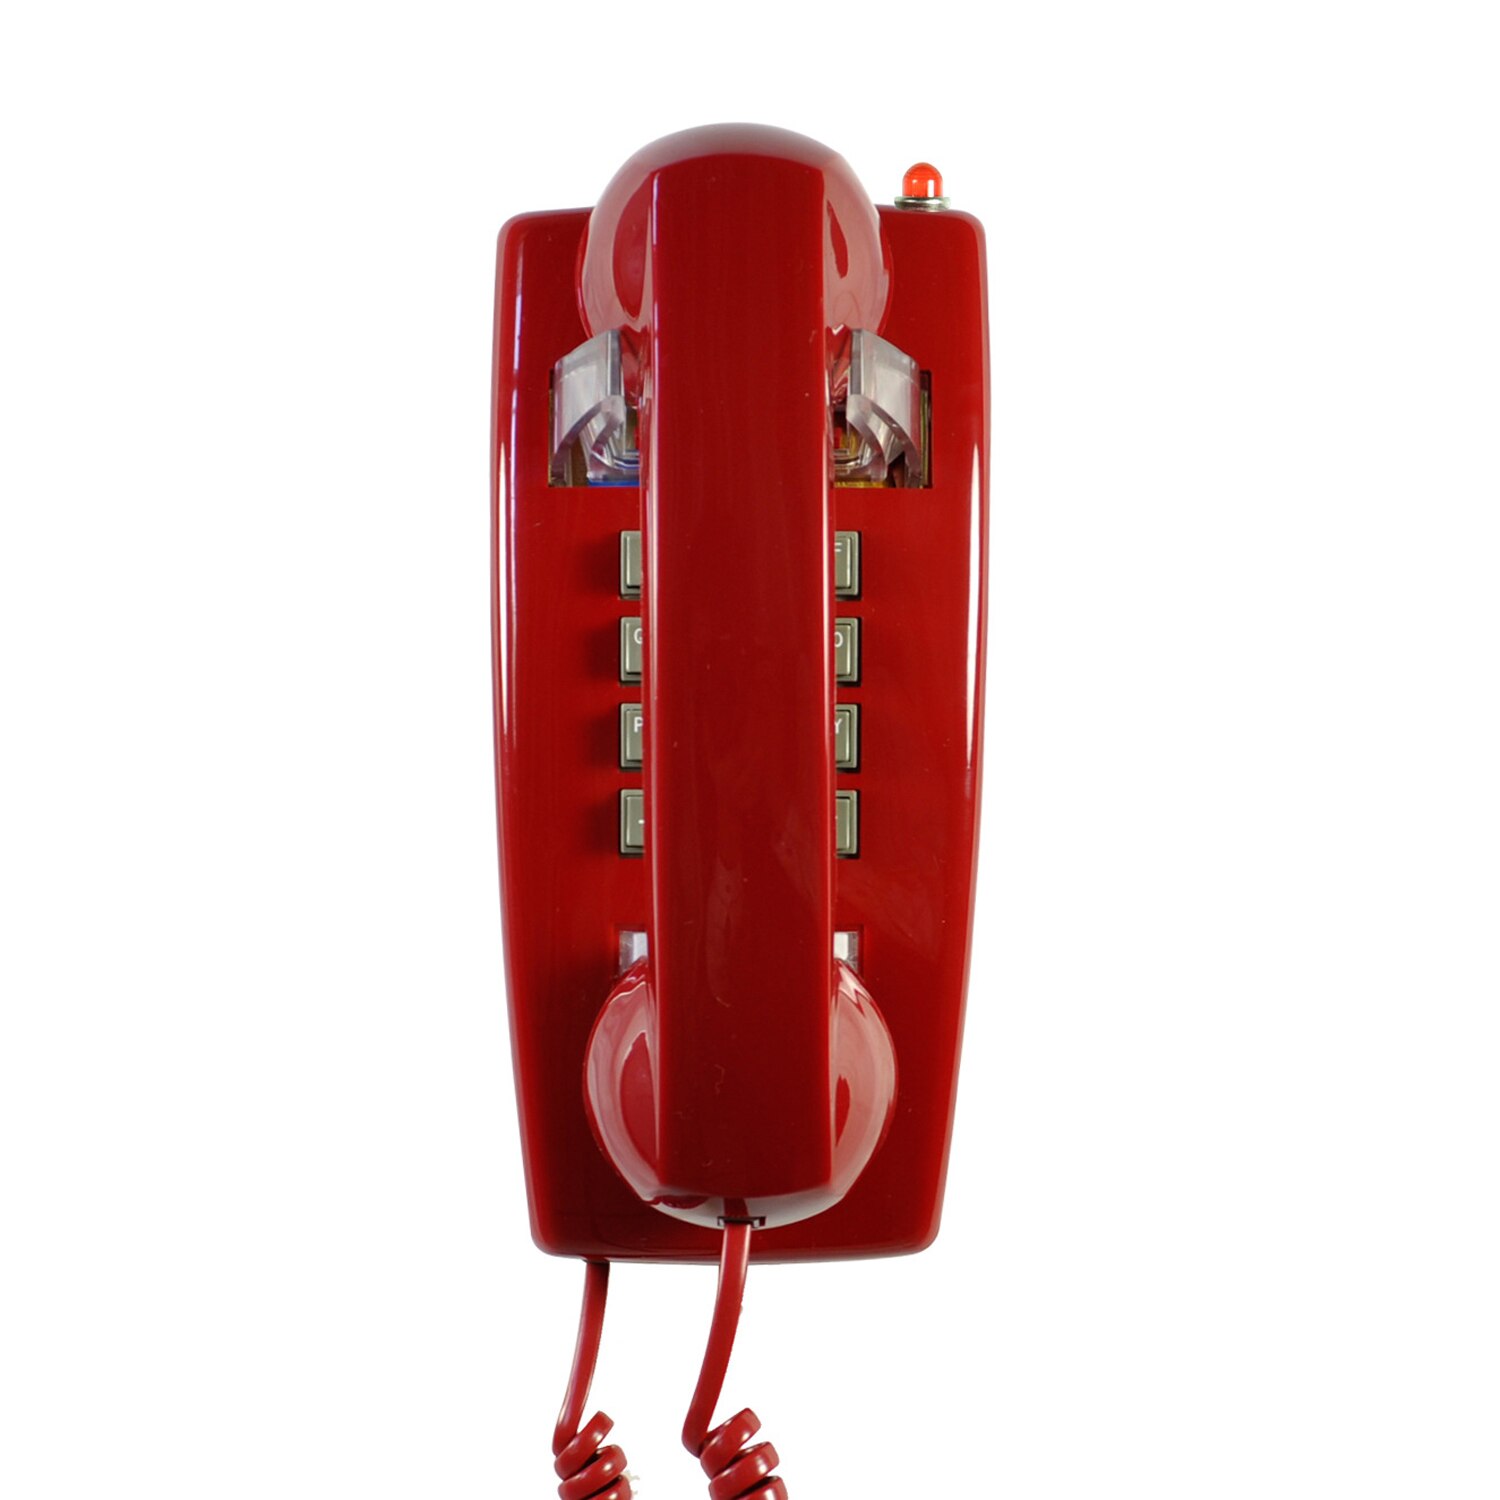 Klassieke Rode Muur Telefoon Vintage Retro Stijl Wandmontage Telefoon Analoge Oude School Telefoon Met Koord Voor Home Office Hotel